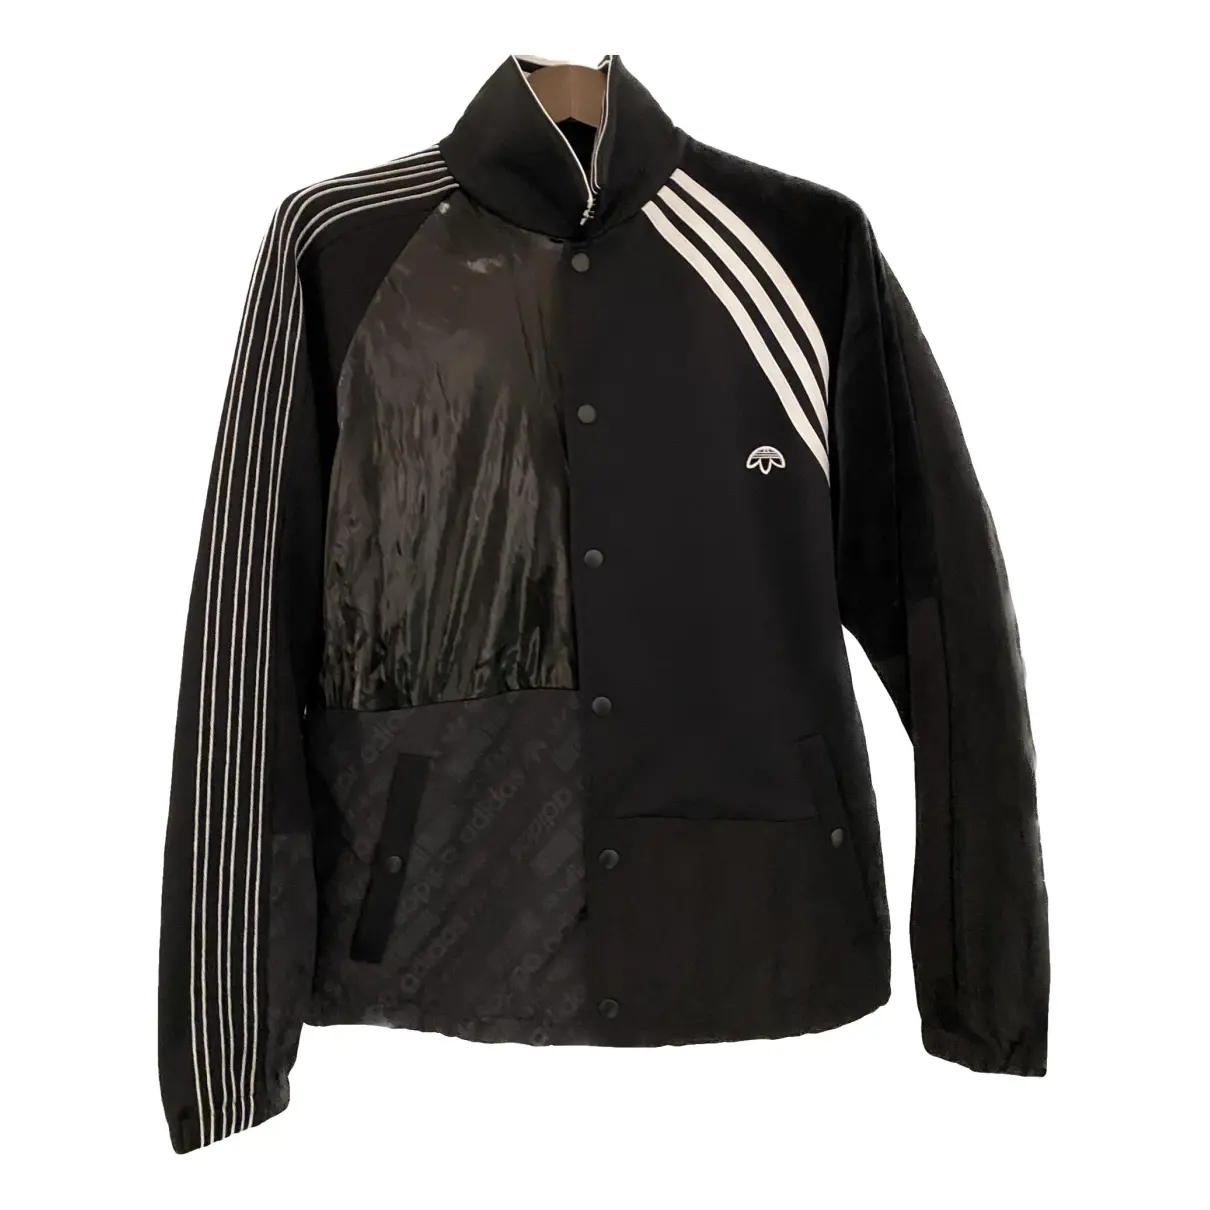 Jacket Adidas Originals x Alexander Wang Black size L